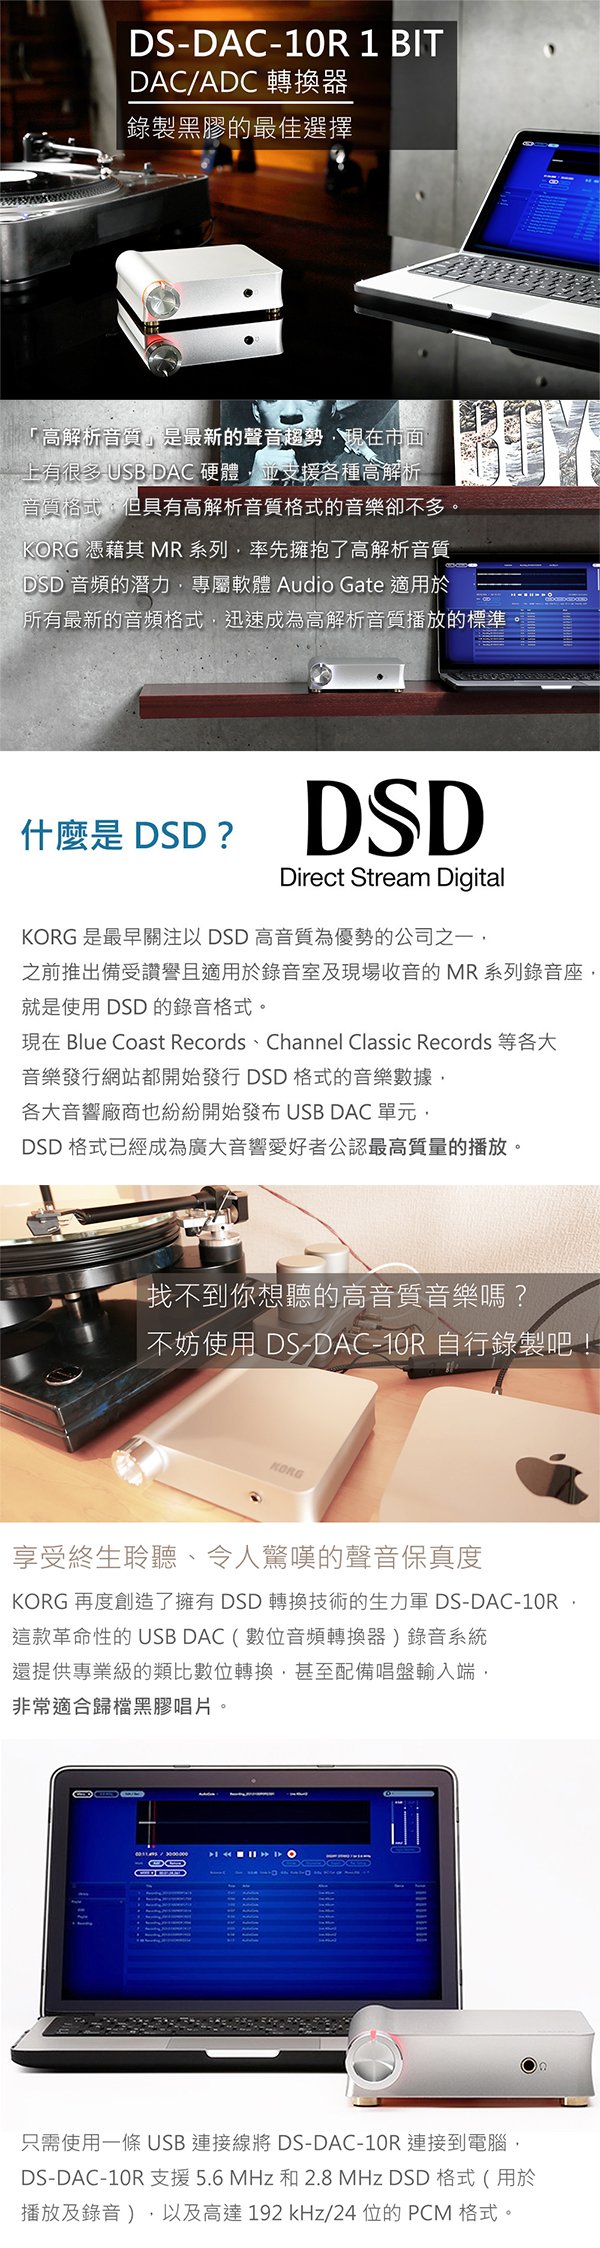 特價] KORG 專業音響系列DS-DAC-10R 1 BIT DAC/ADC 轉換器錄製黑膠的最佳選擇- PChome 商店街